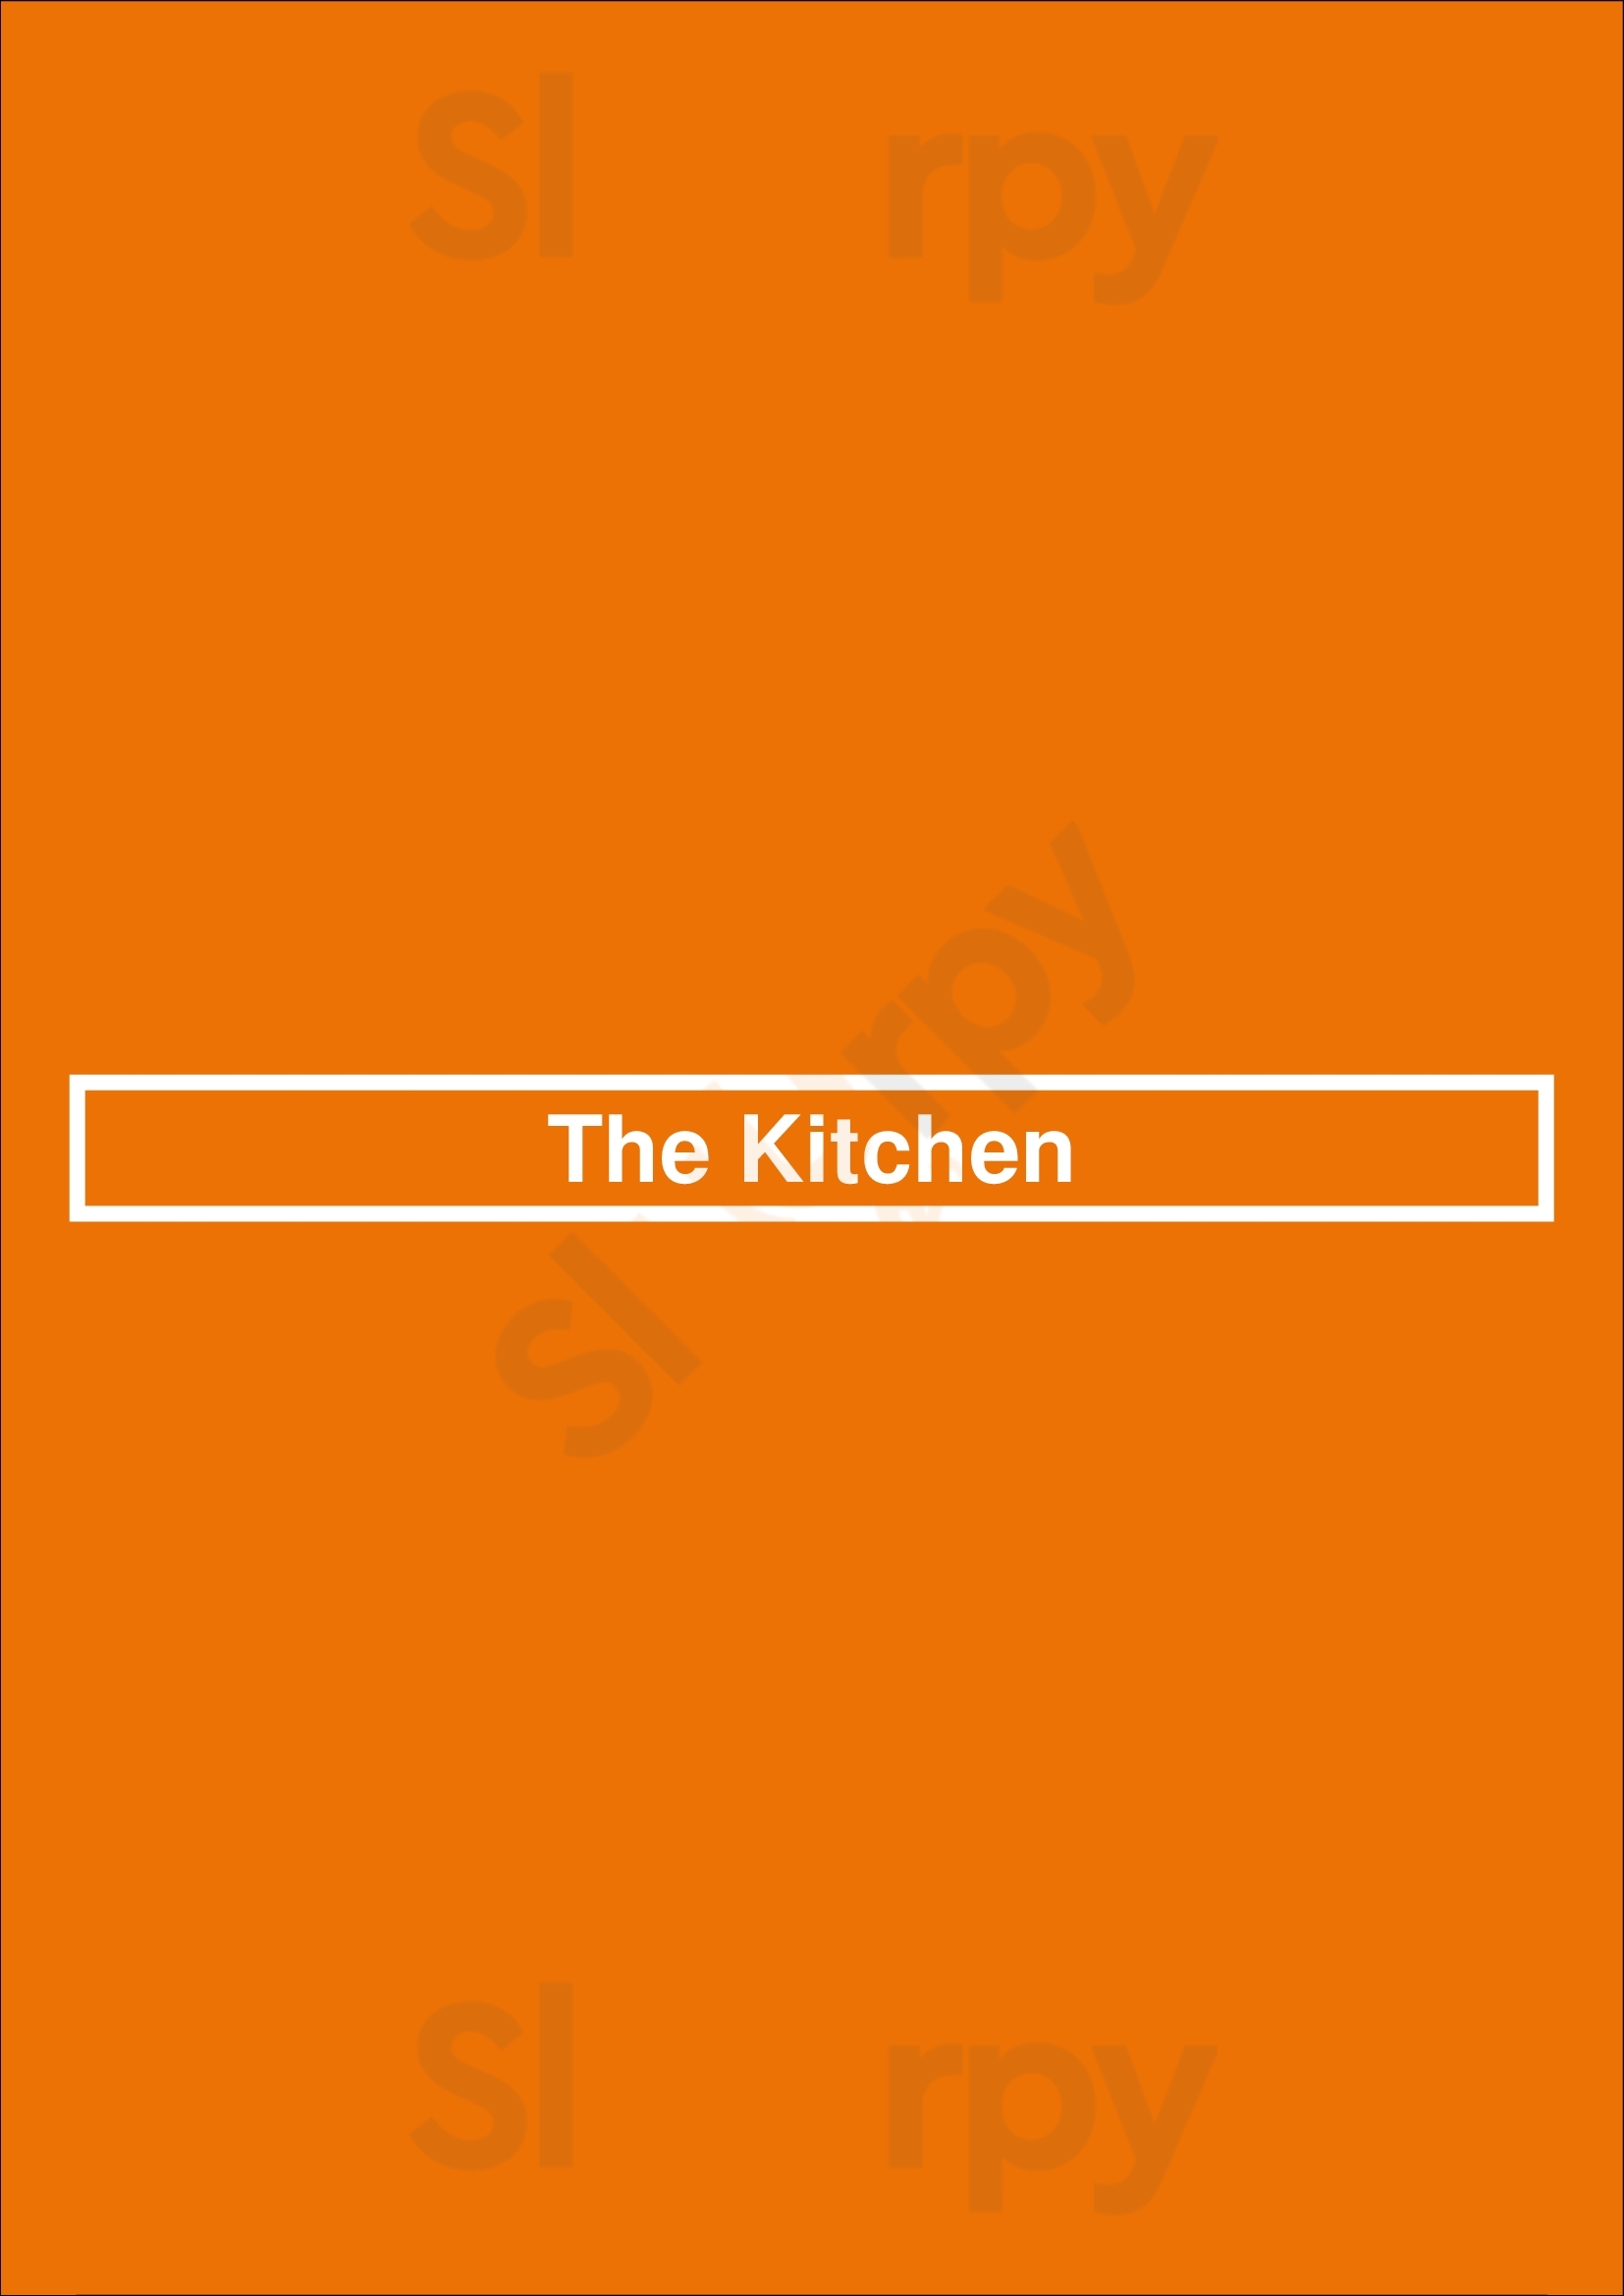 The Kitchen Dallas Menu - 1